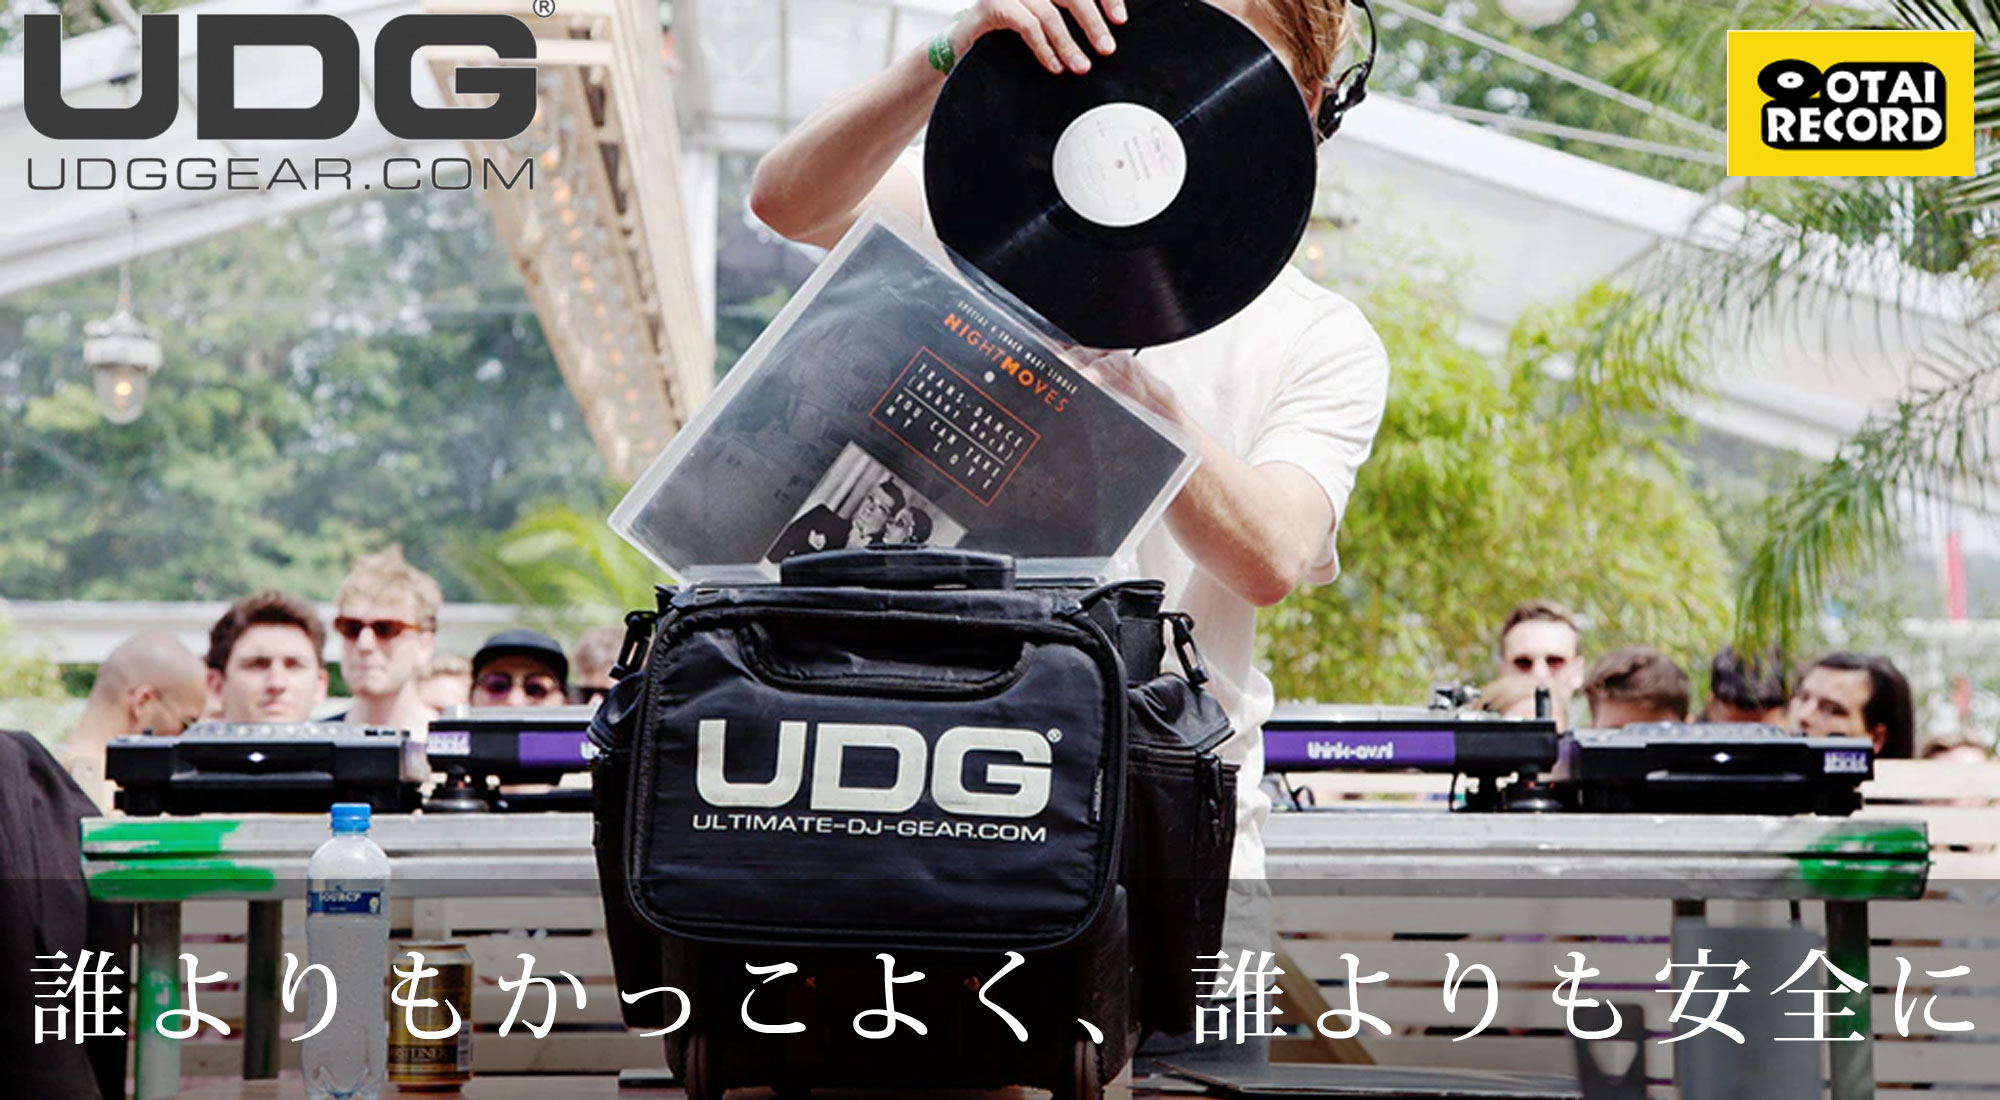 世界中のDJから愛される大人気DJギアバッグ 「UDG」 OTAIRECORD